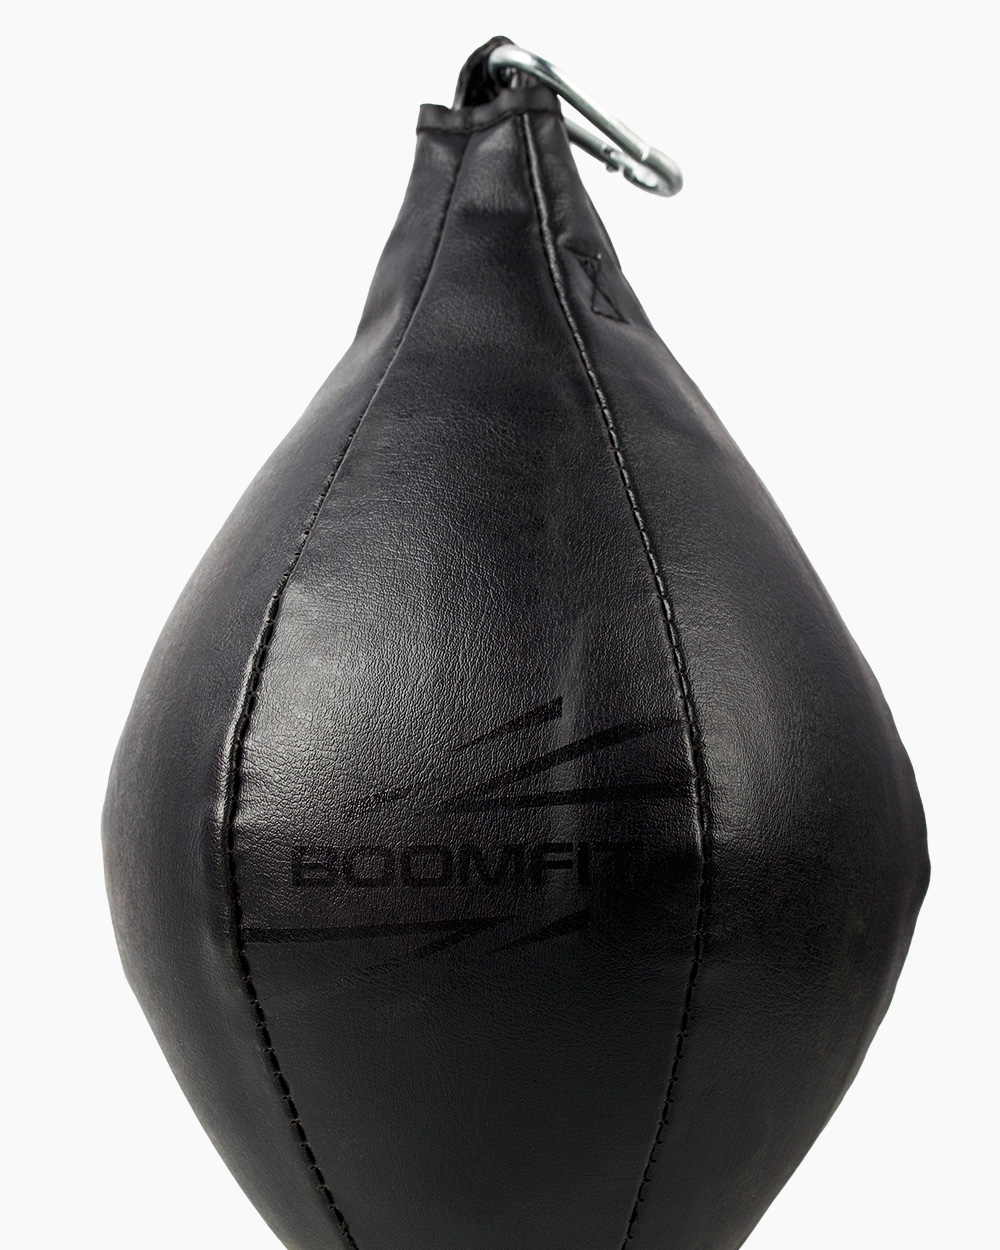 Pera De Boxeo Black Edition Boomfit  MKP